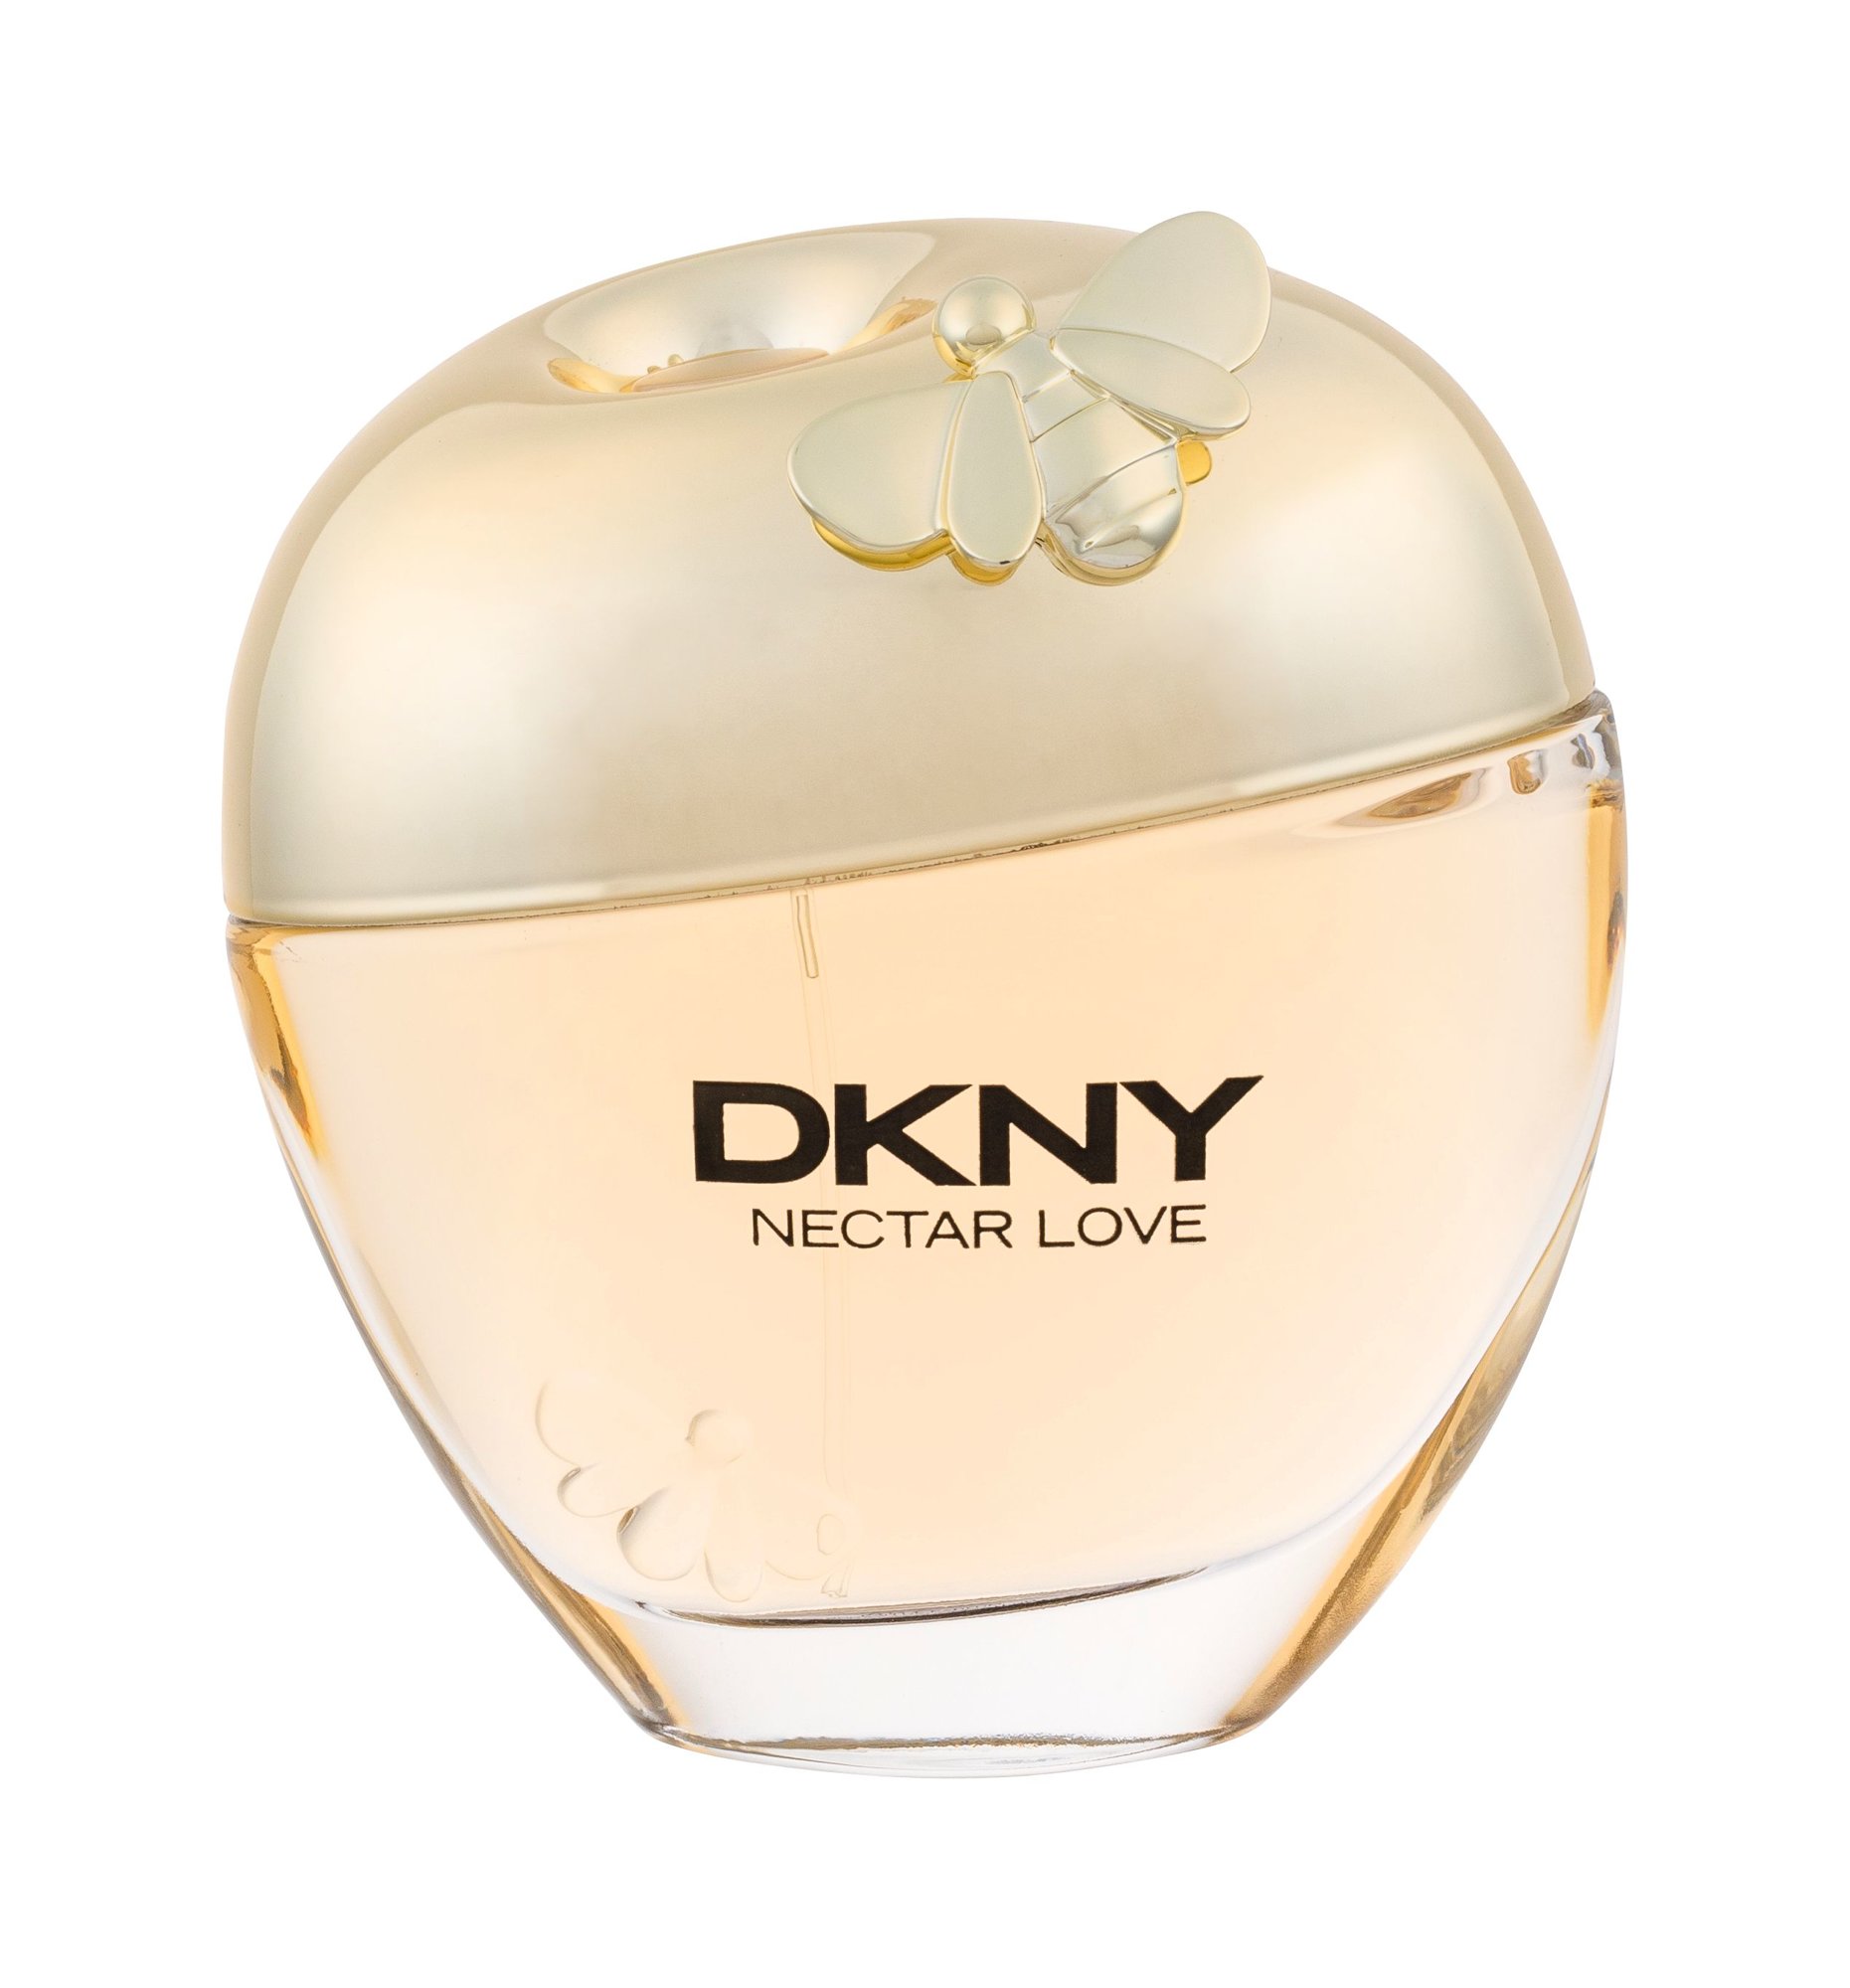 DKNY Nectar Love, edp 50ml